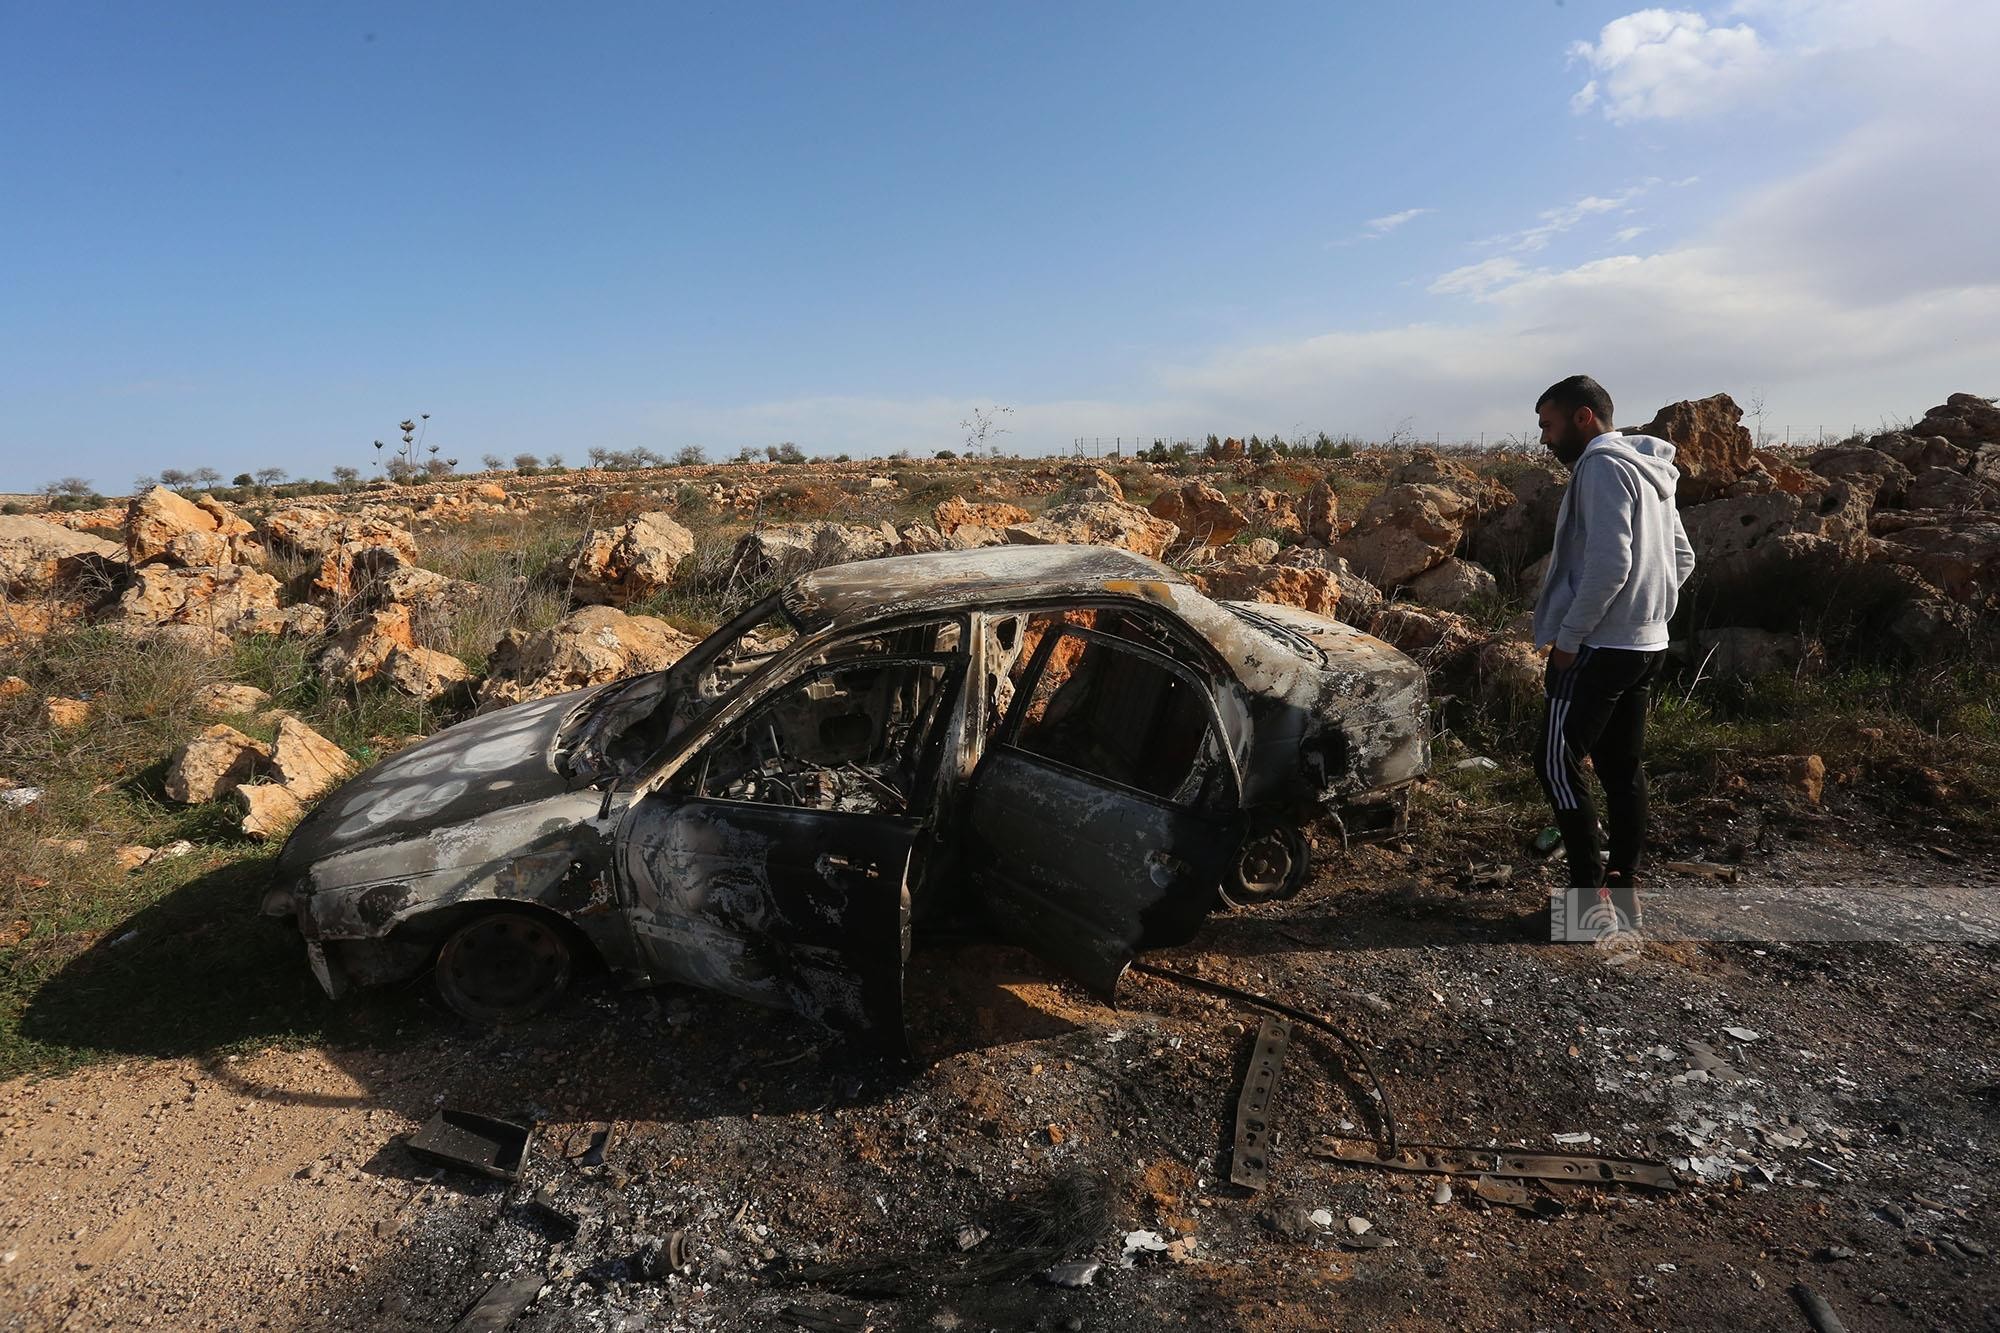 مستوطنون يحرقون ست مركبات فلسطينية بشكل كامل بين بلدتي عقربا ومجدل بني فاضل قرب نابلس 33.jpg